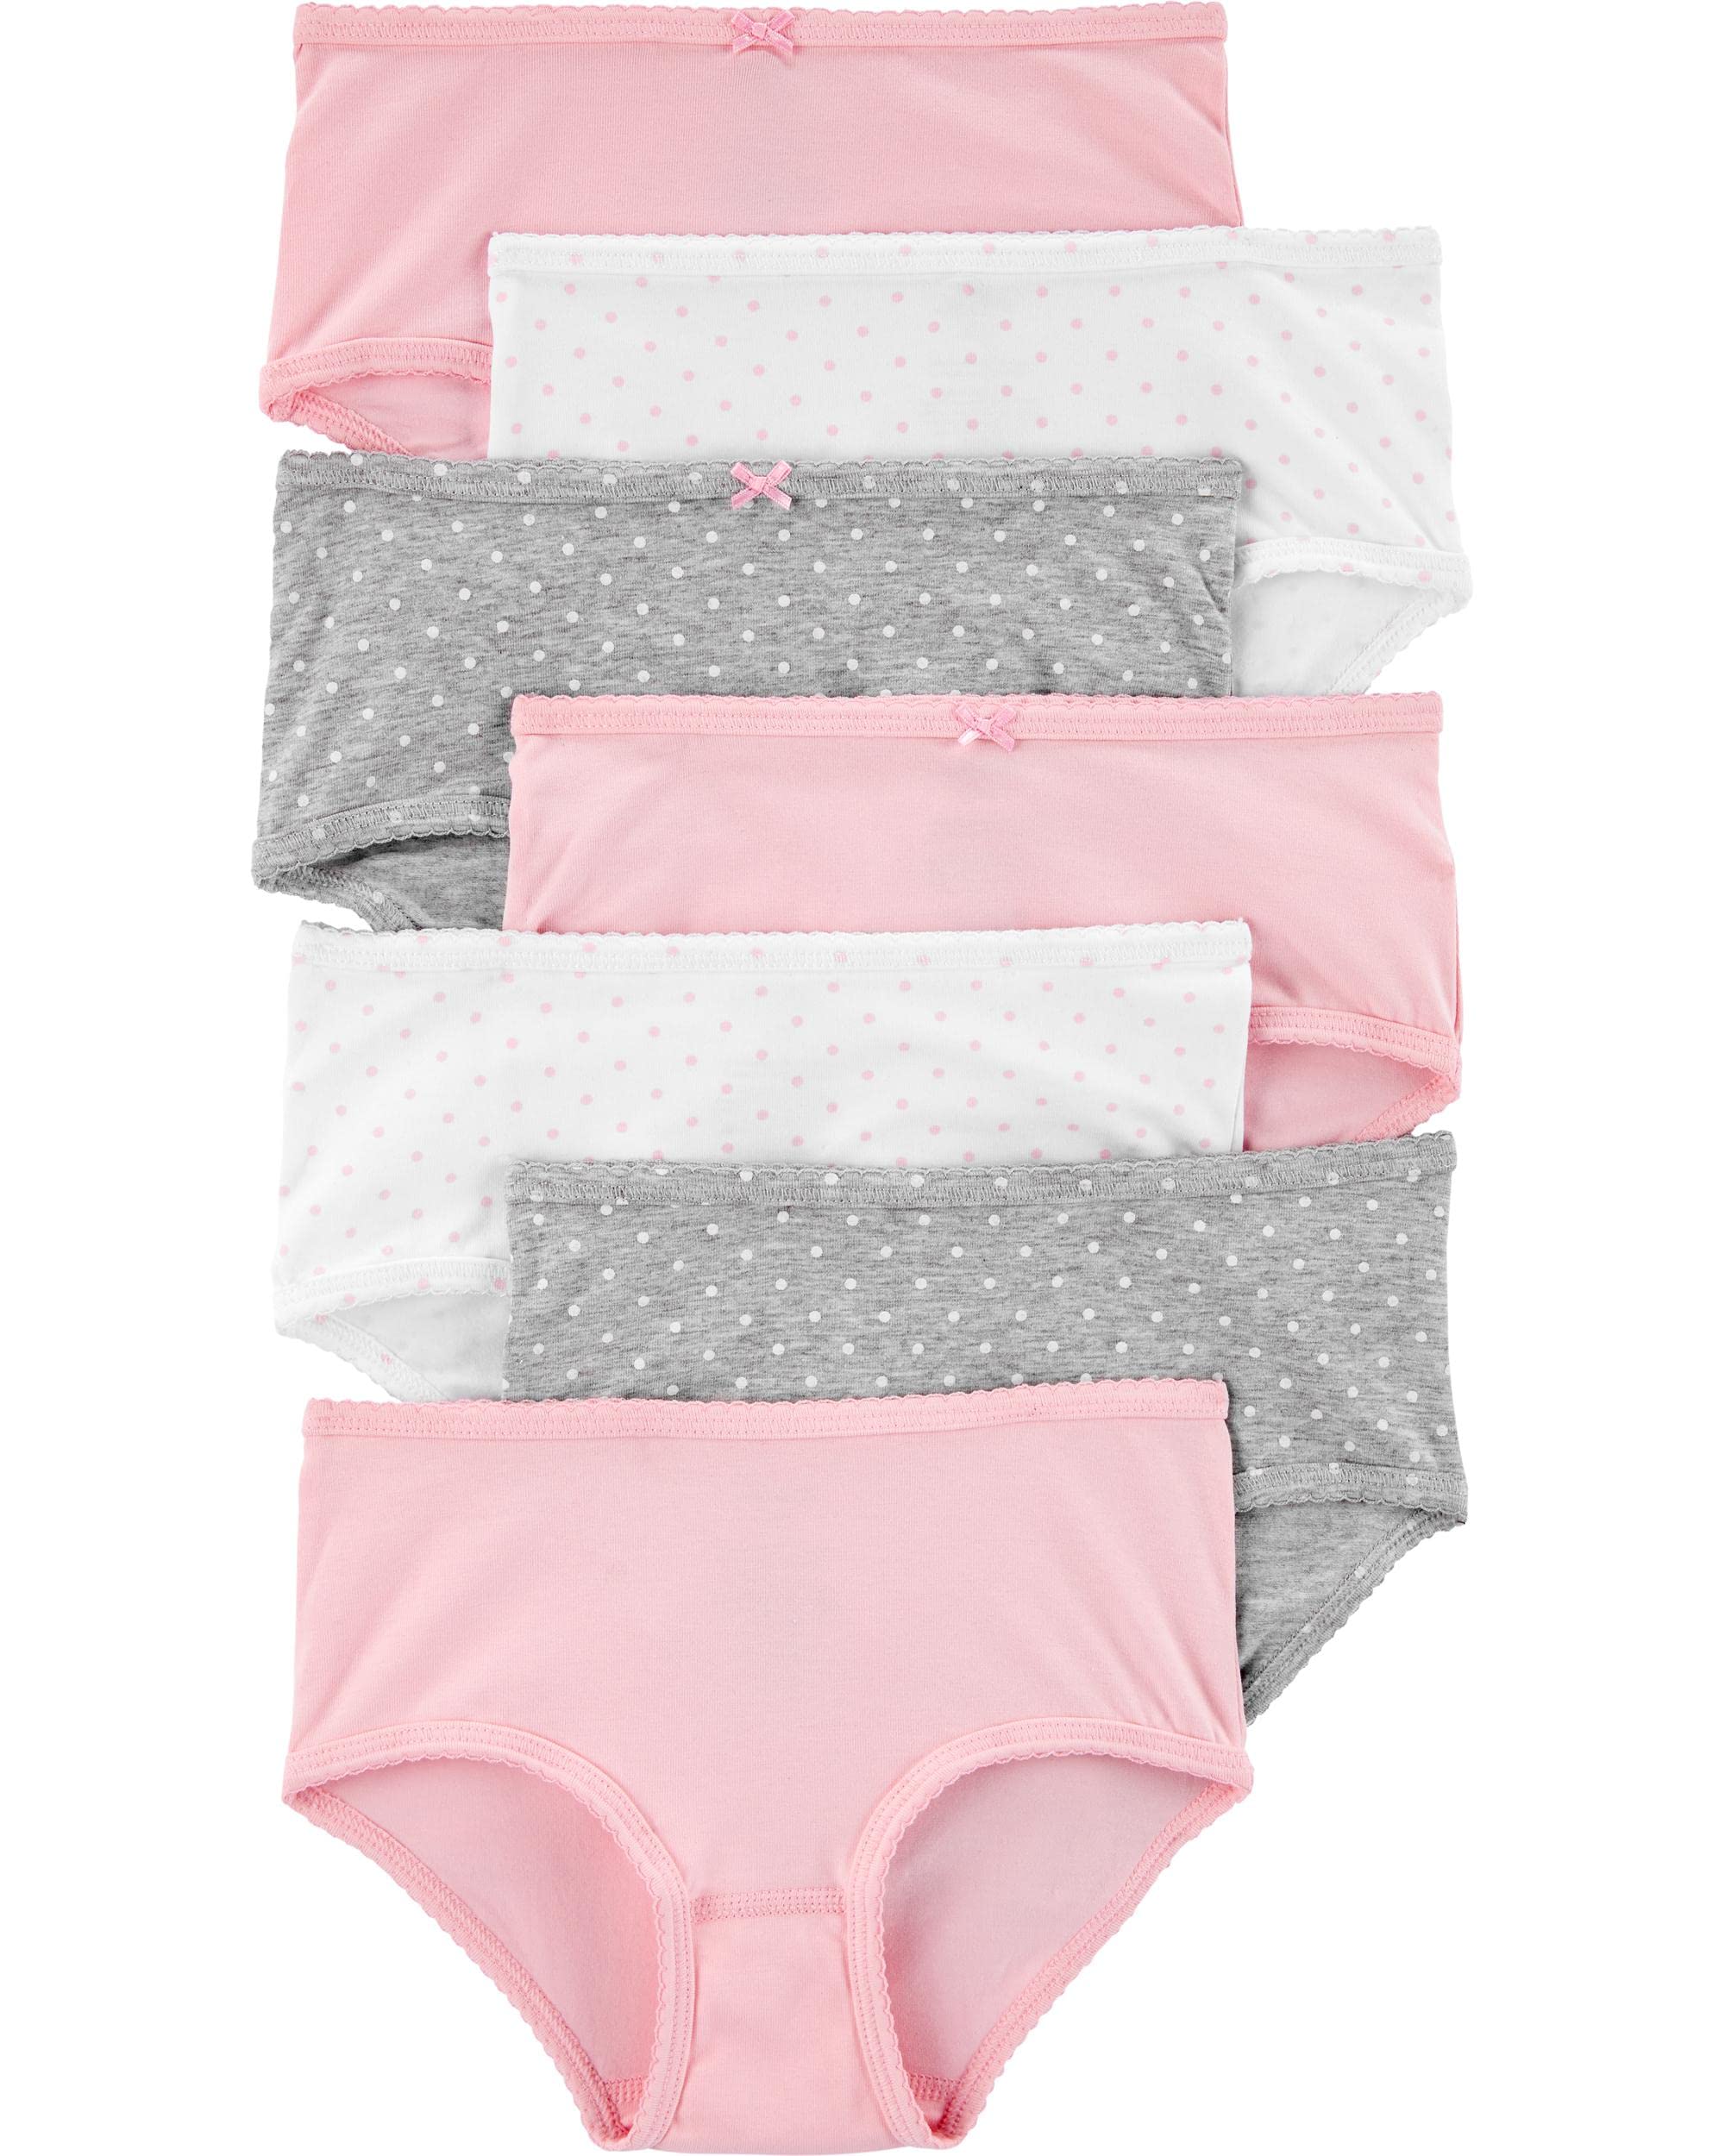 Carter's Little Girls Stretch Cotton Underwear 7 Pack (Pink(3H741910)/White/Grey